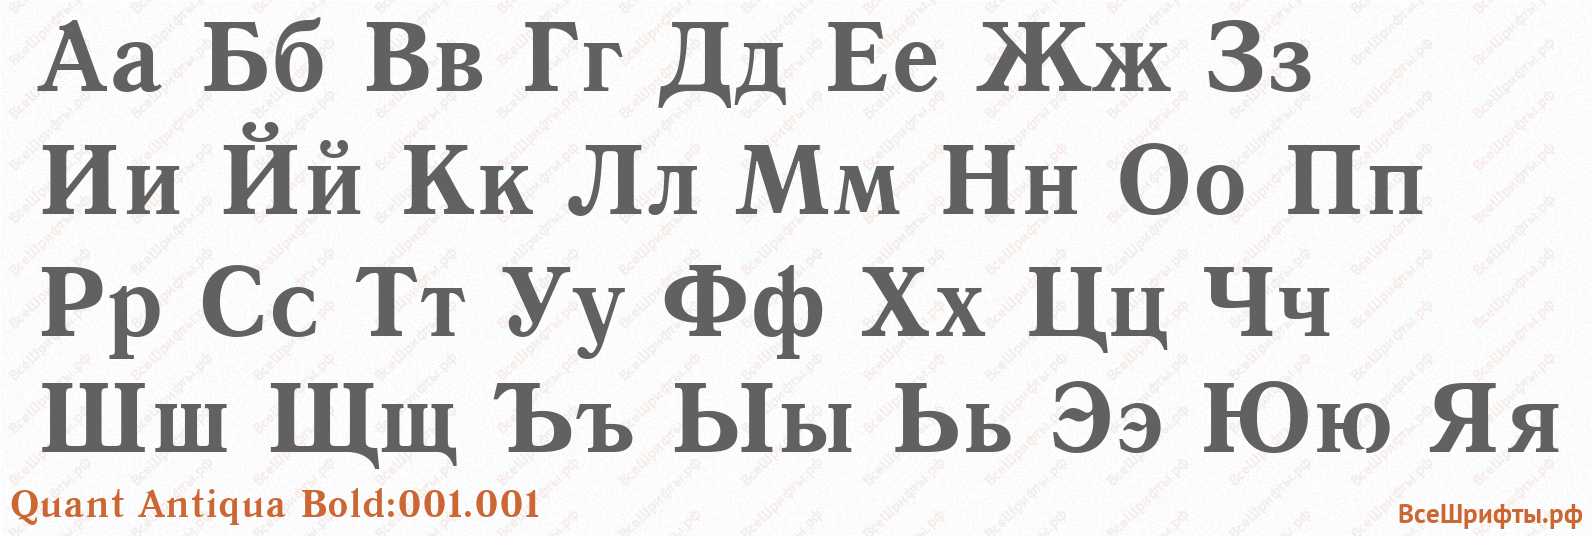 Шрифт Quant Antiqua Bold:001.001 с русскими буквами